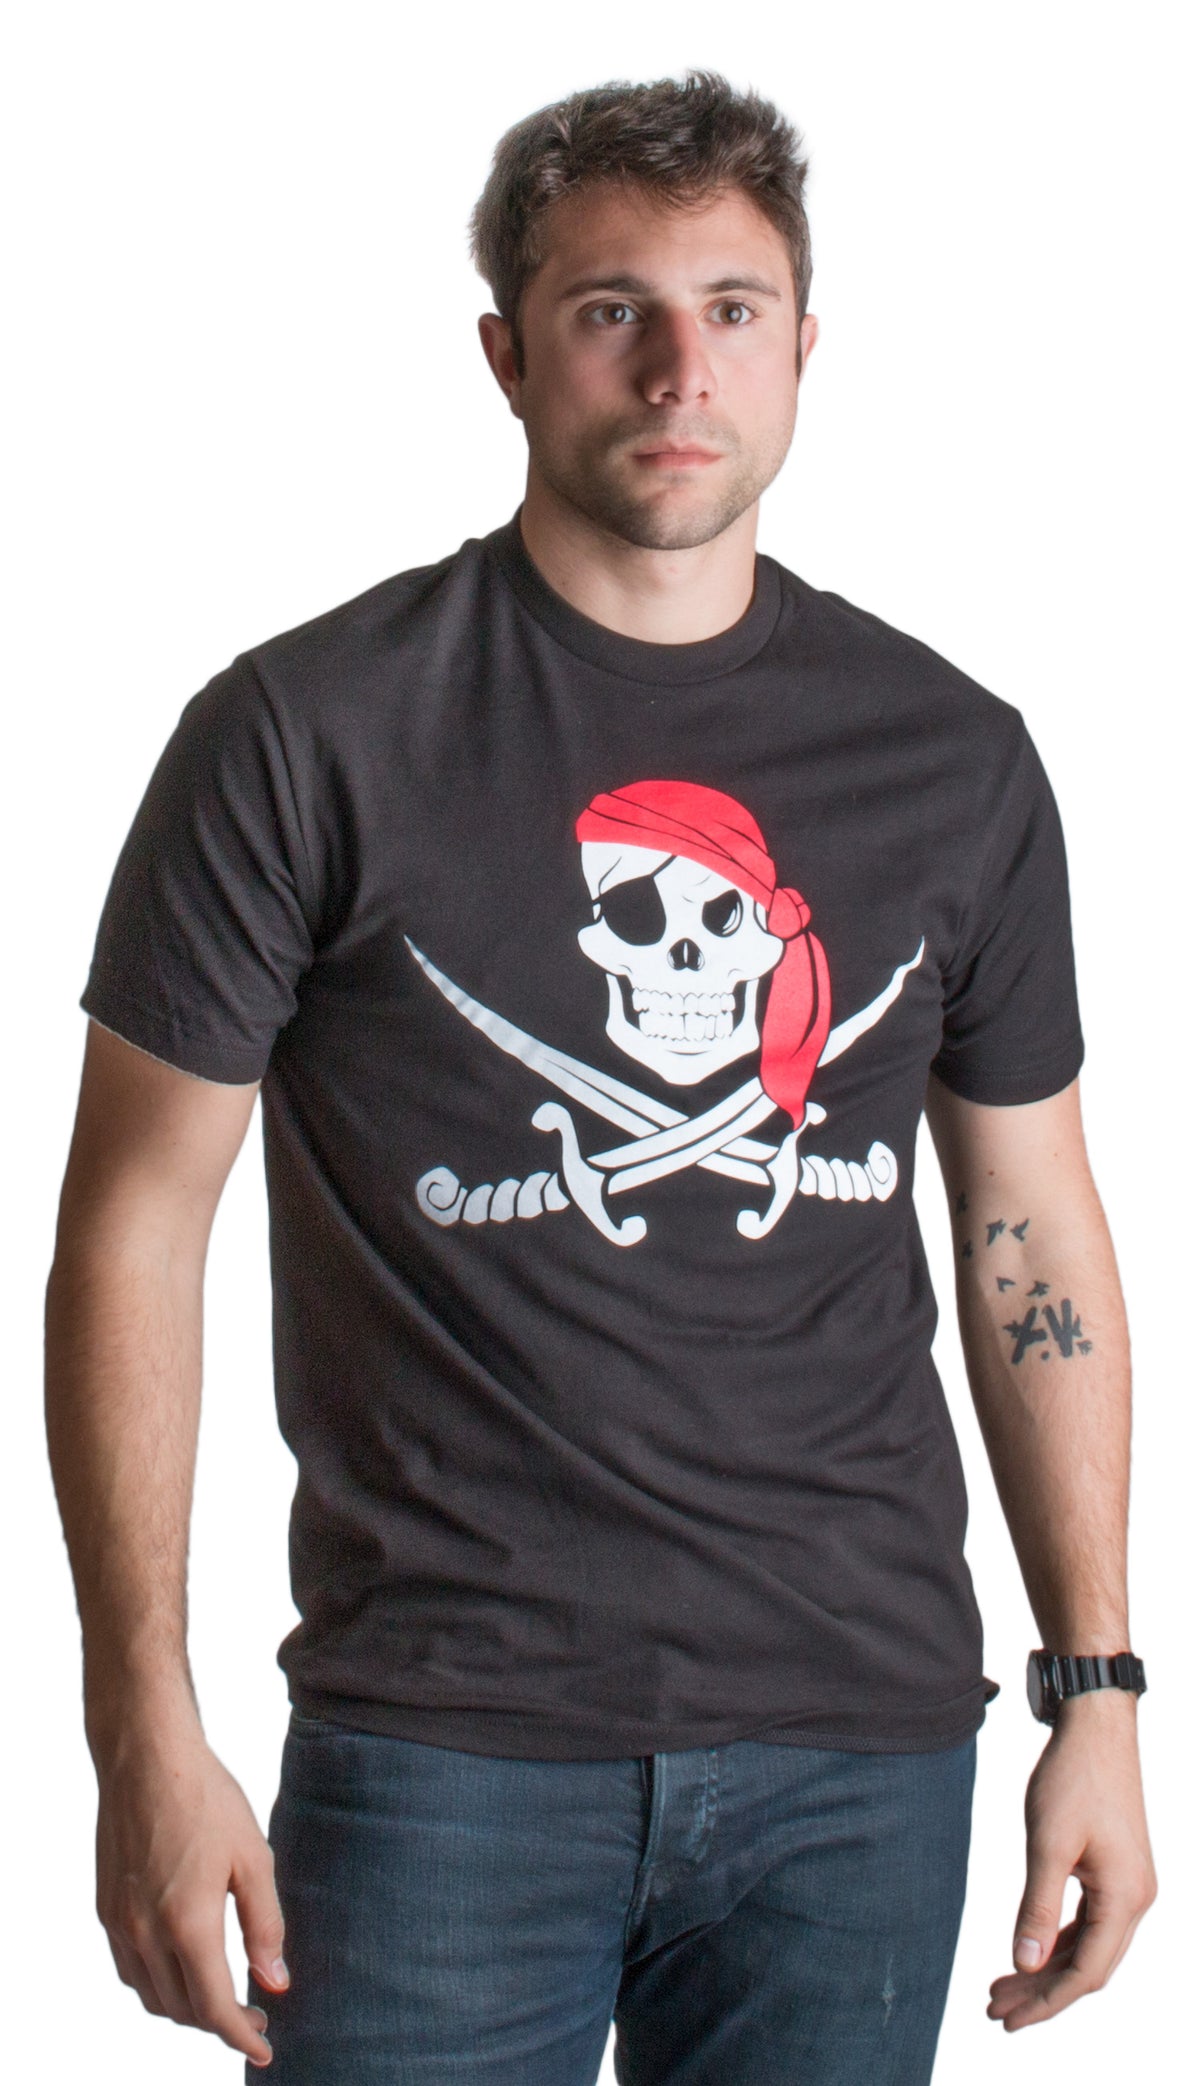 Jolly Roger Pirate Flag | Skull & Crossbones Buccaneer Costume Unisex T-shirt